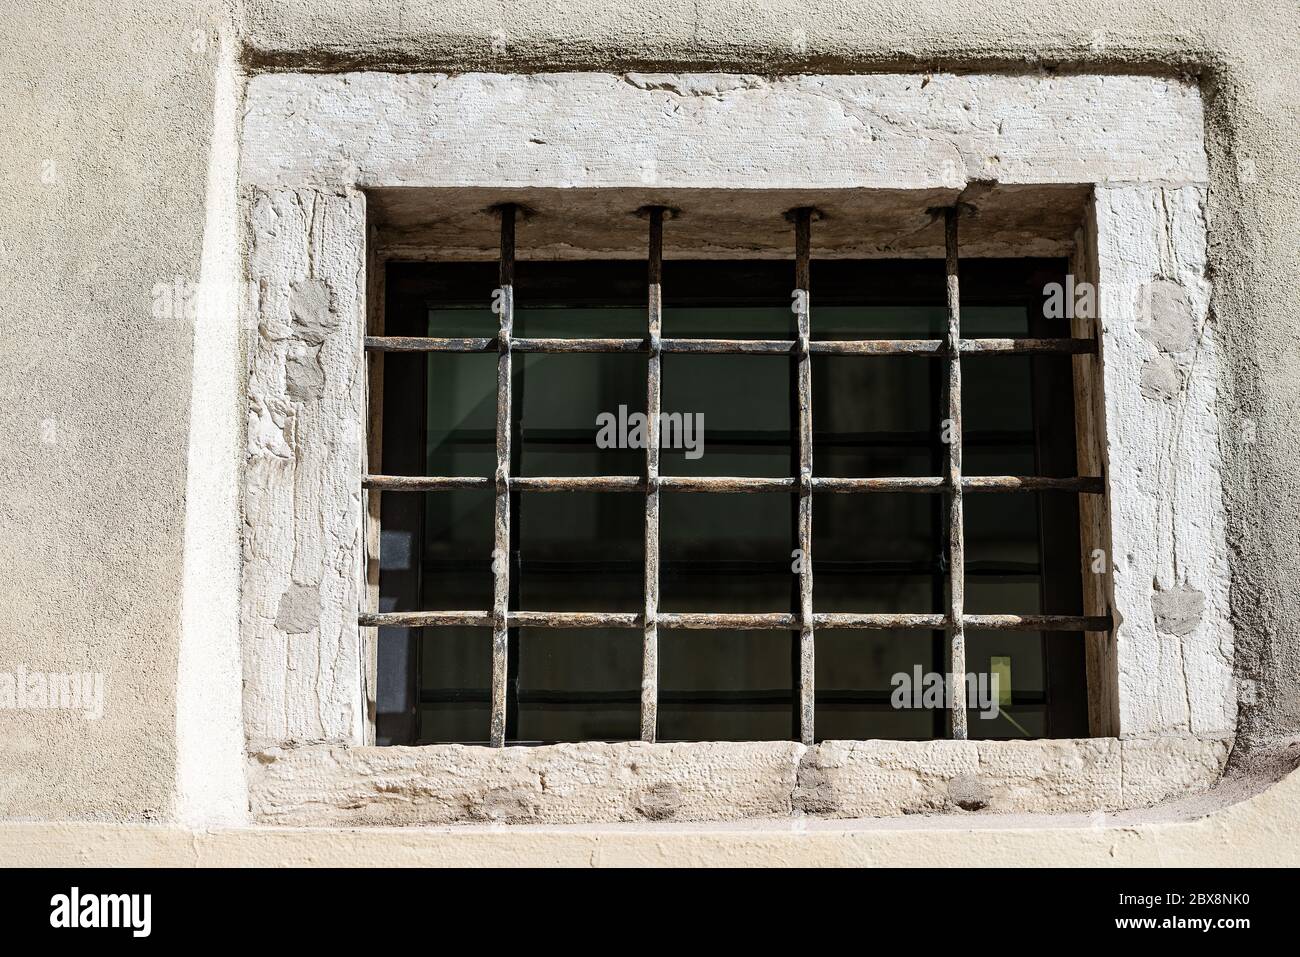 Primo piano di una vecchia finestra con barre di sicurezza in ferro battuto e antifurto. Trentino Alto Adige, Italia, Europa Foto Stock